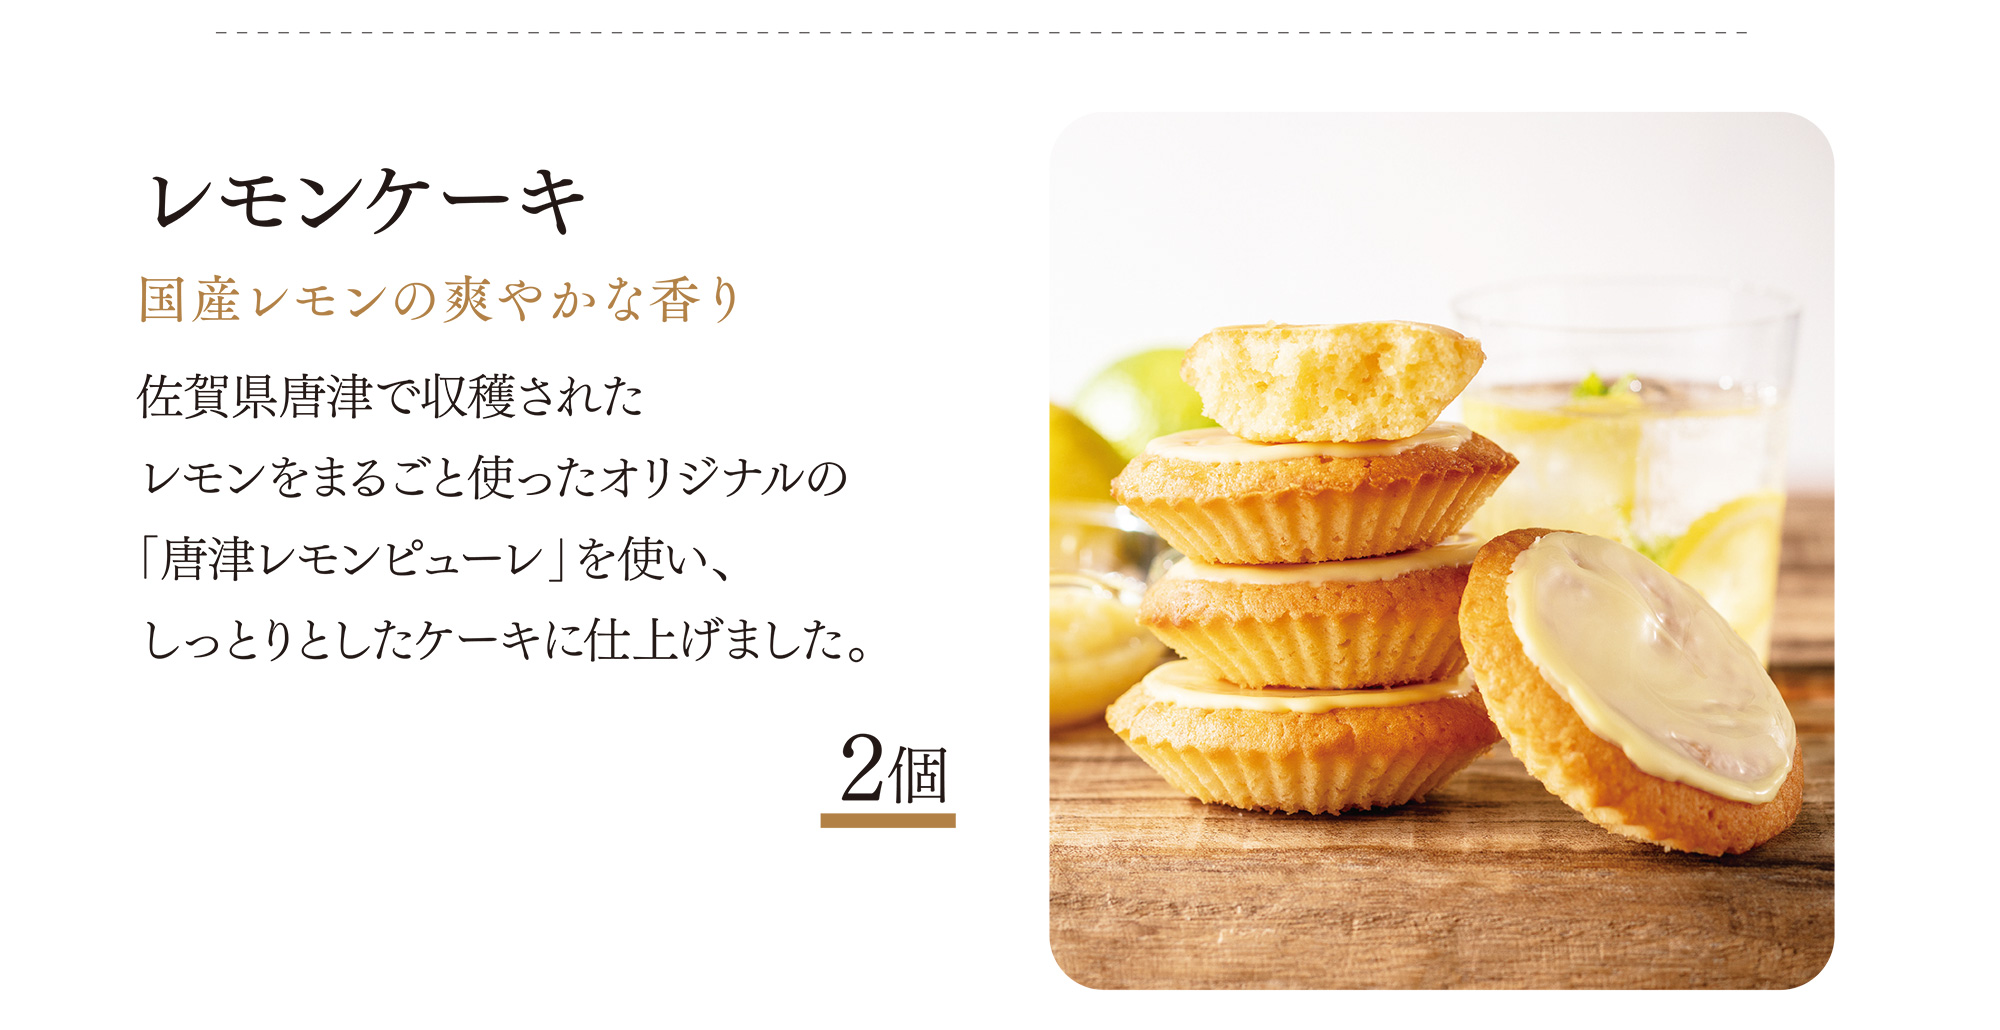 レモンケーキ 国産レモンの爽やかな香り 佐賀県唐津で収穫されたレモンをまるごと使ったオリジナルの「唐津レモンピューレ」を使い、しっとりとしたケーキに仕上げました。